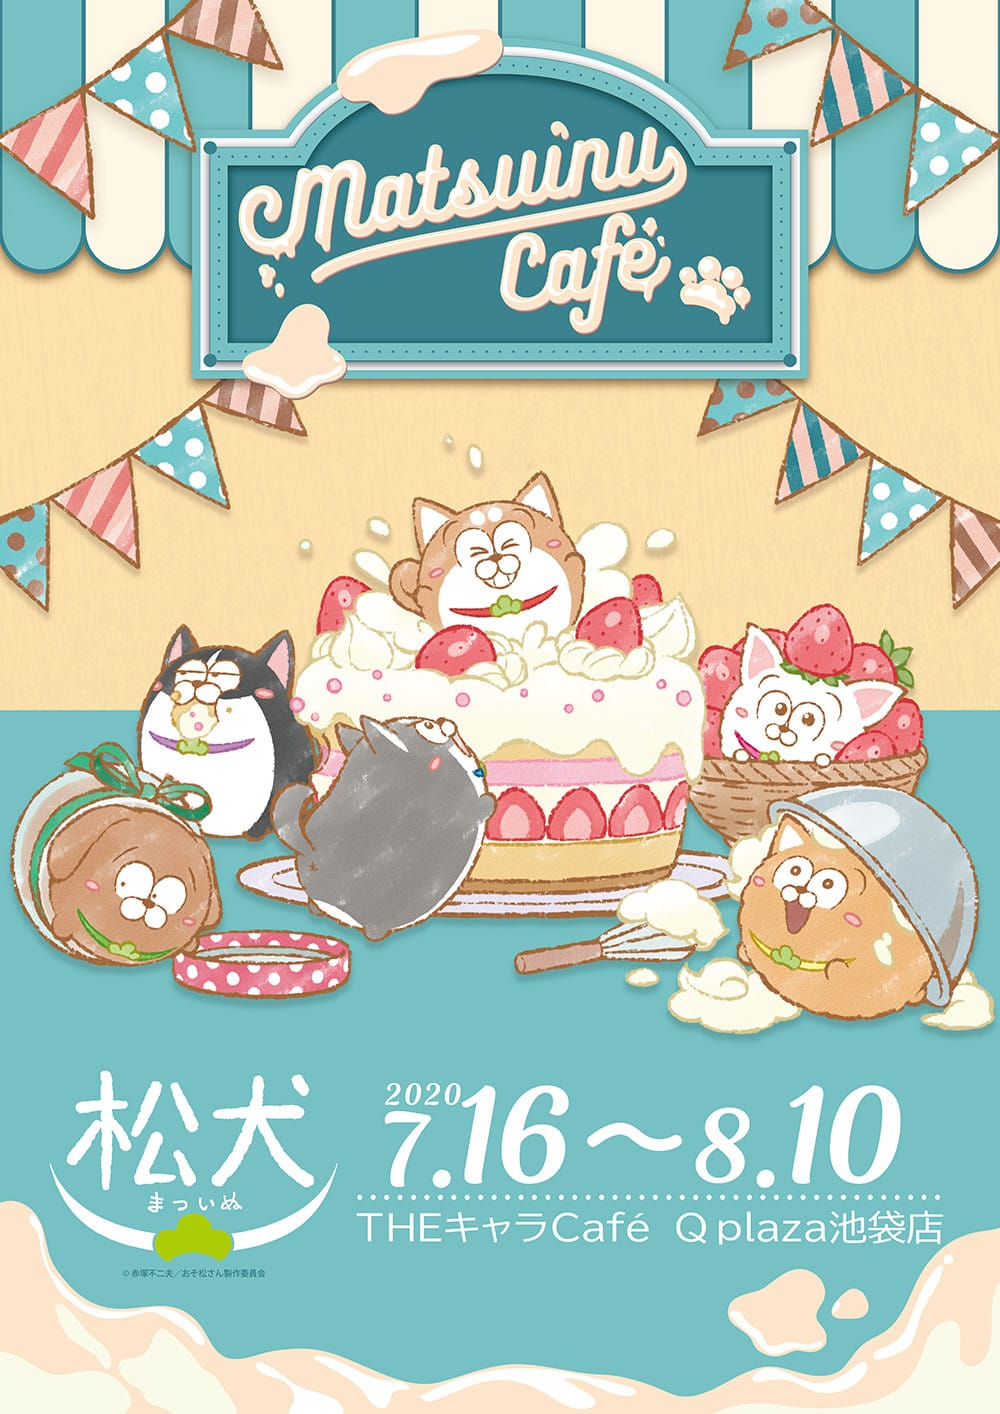 松犬(おそ松さん) × THEキャラCafe 池袋店 7.16-8.10 コラボカフェ開催!!